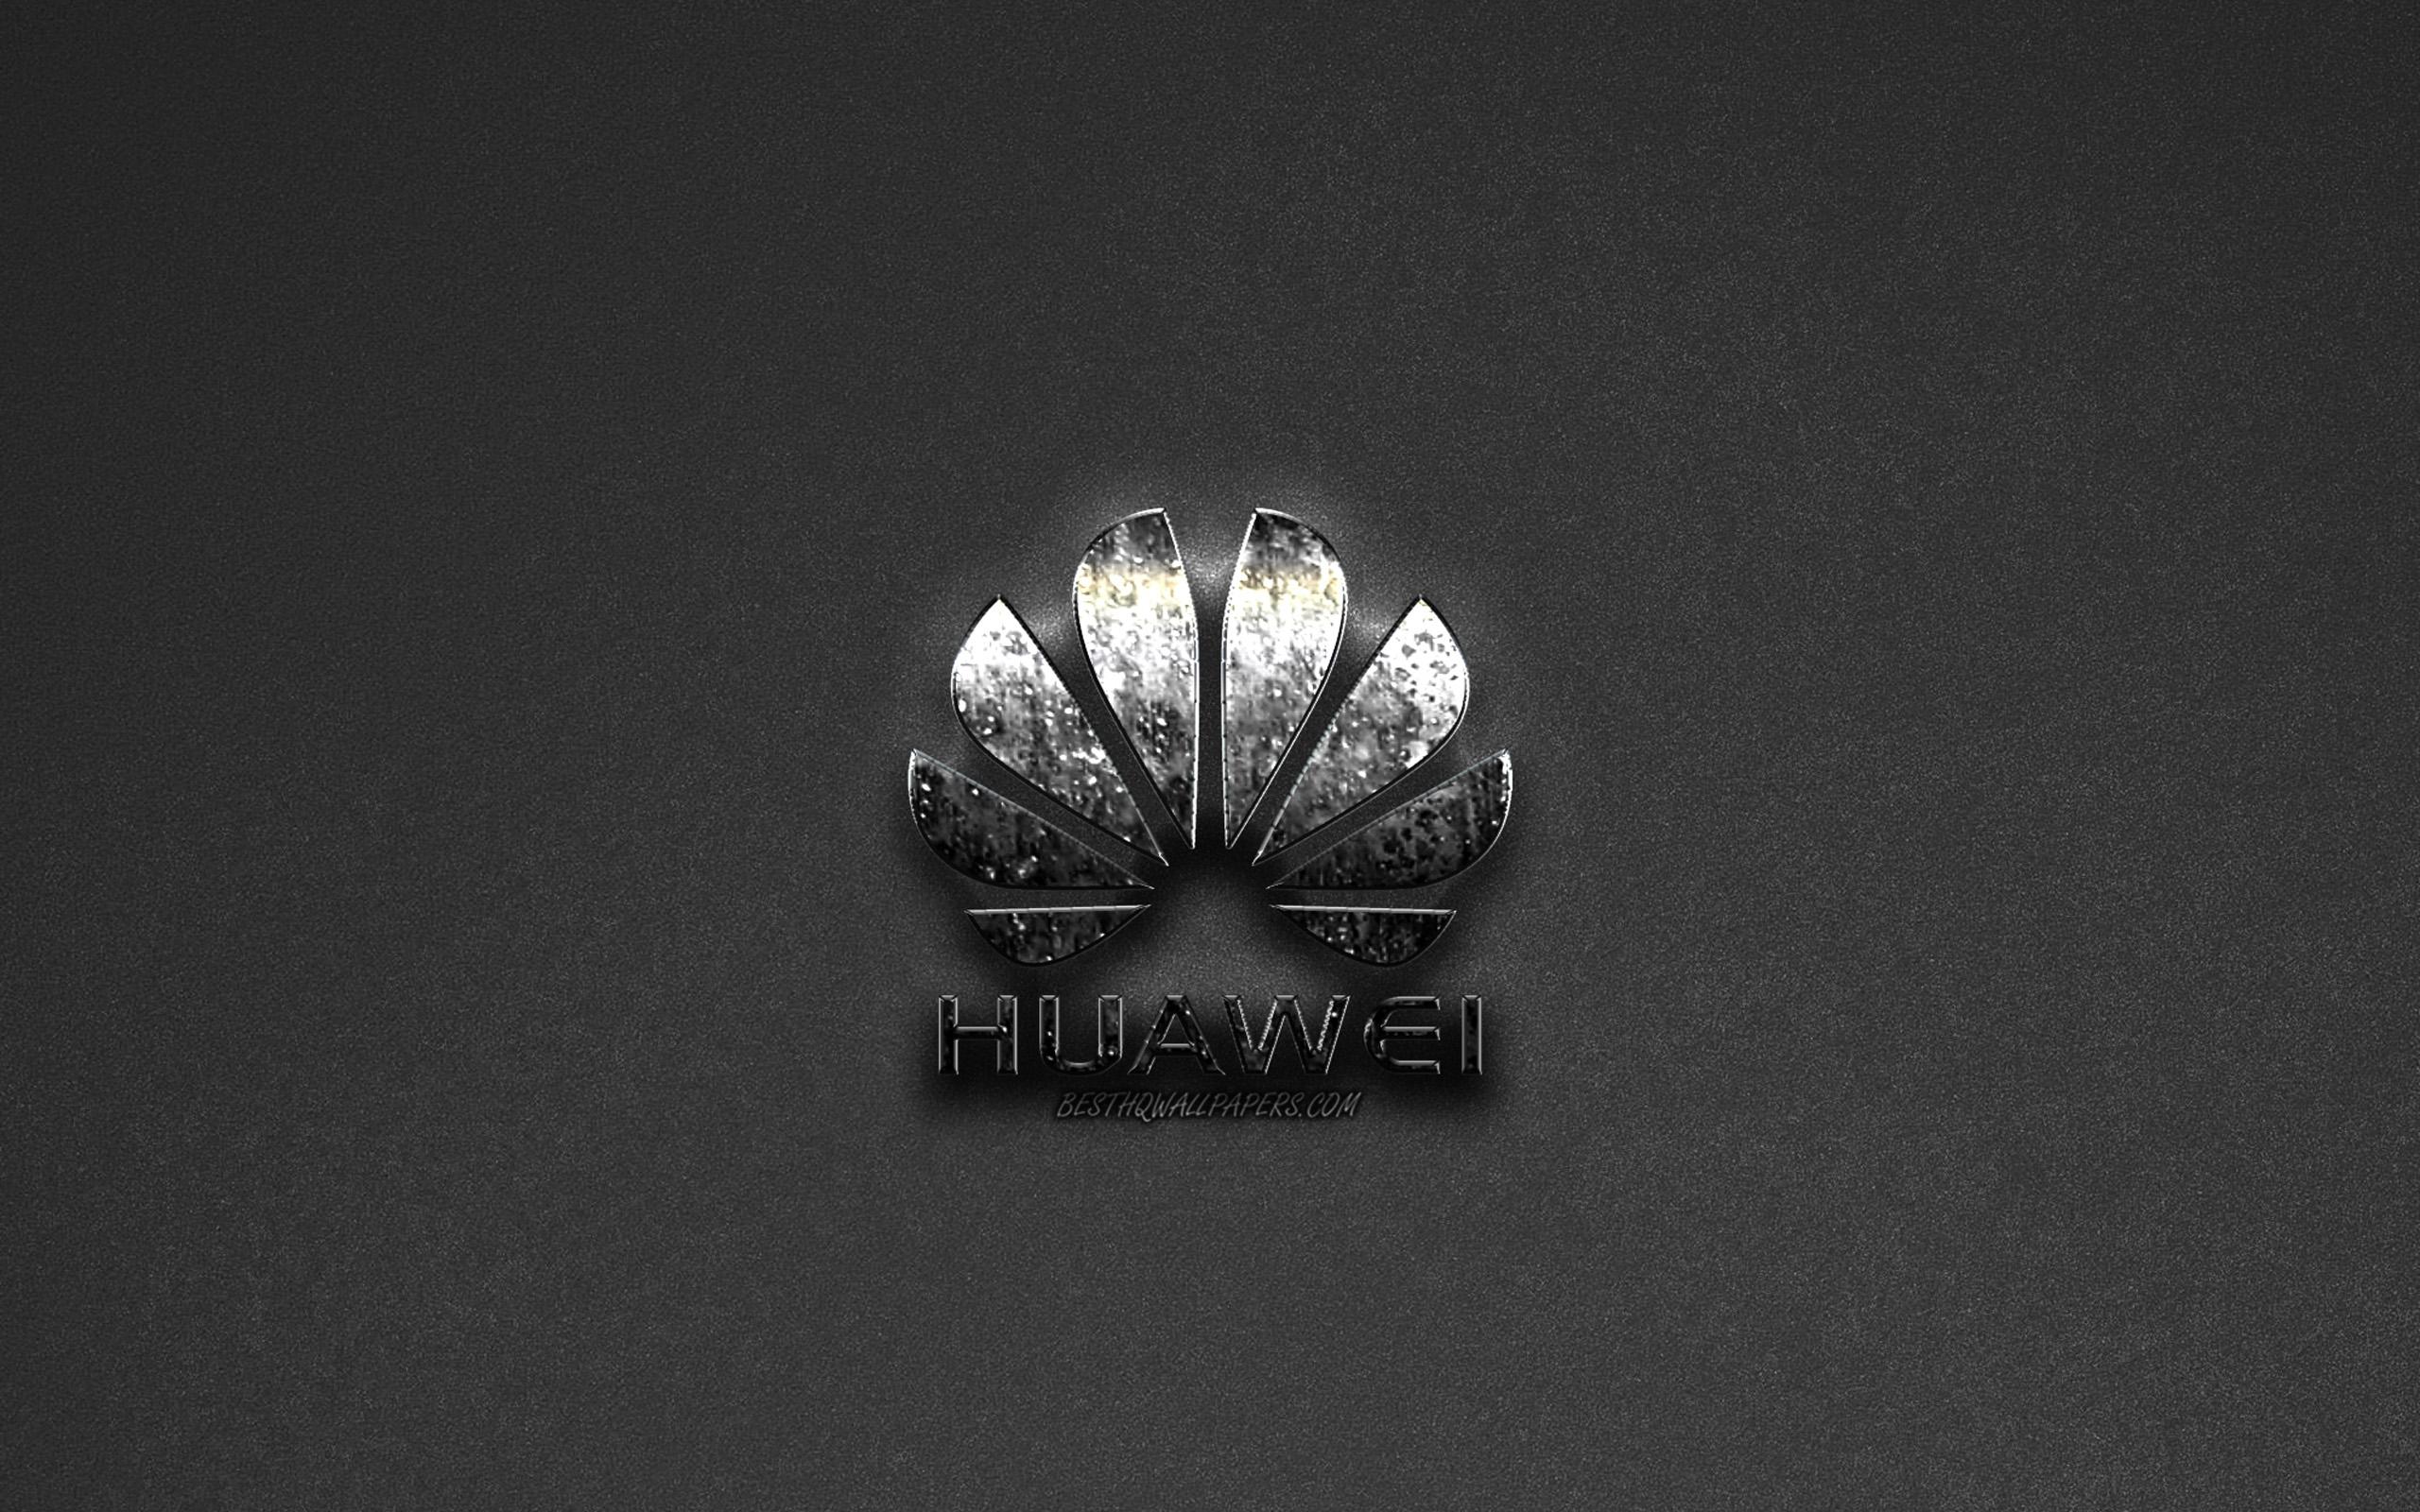 Download wallpaper Huawei Logo, gray background, metallic logo